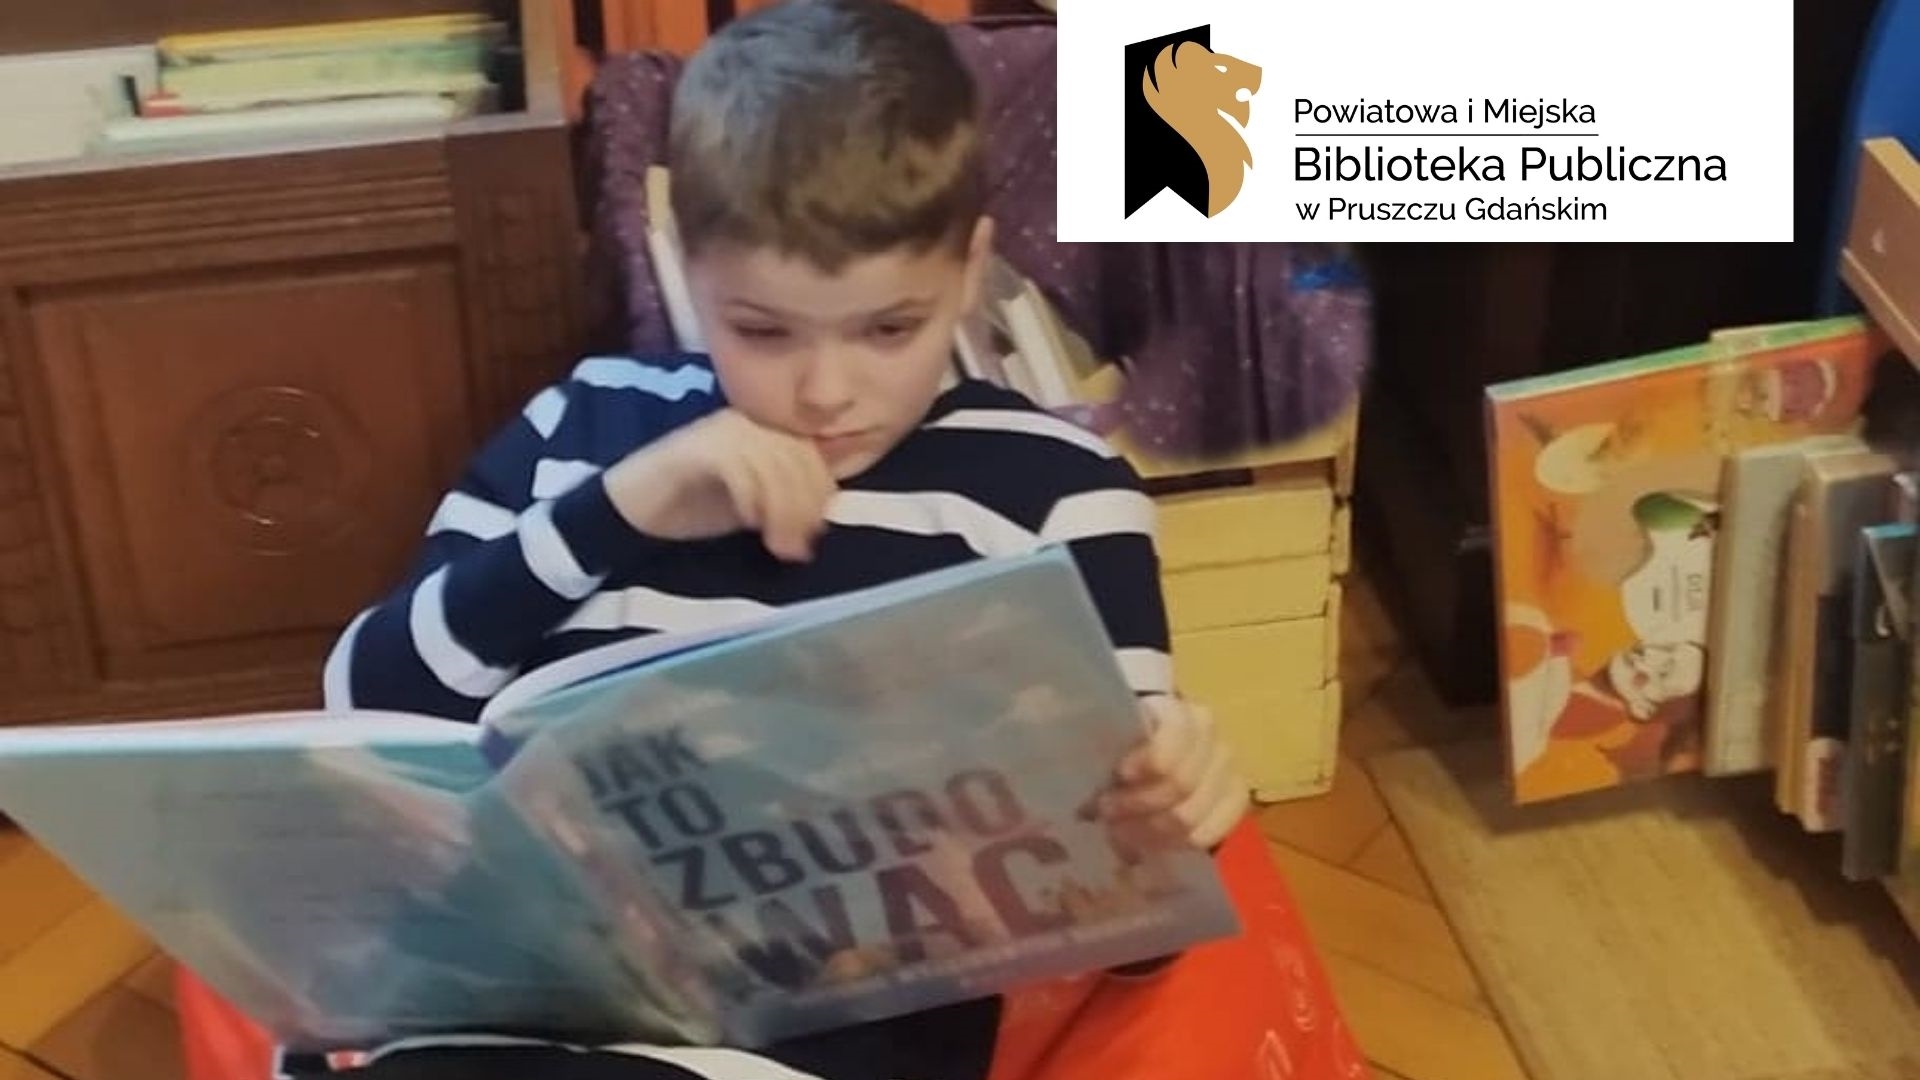 Dziecko, siedzi i trzyma otwartą książkę. Logotyp i tekst „Powiatowa Miejska Biblioteka Publiczna w Pruszczu Gdańskim”.